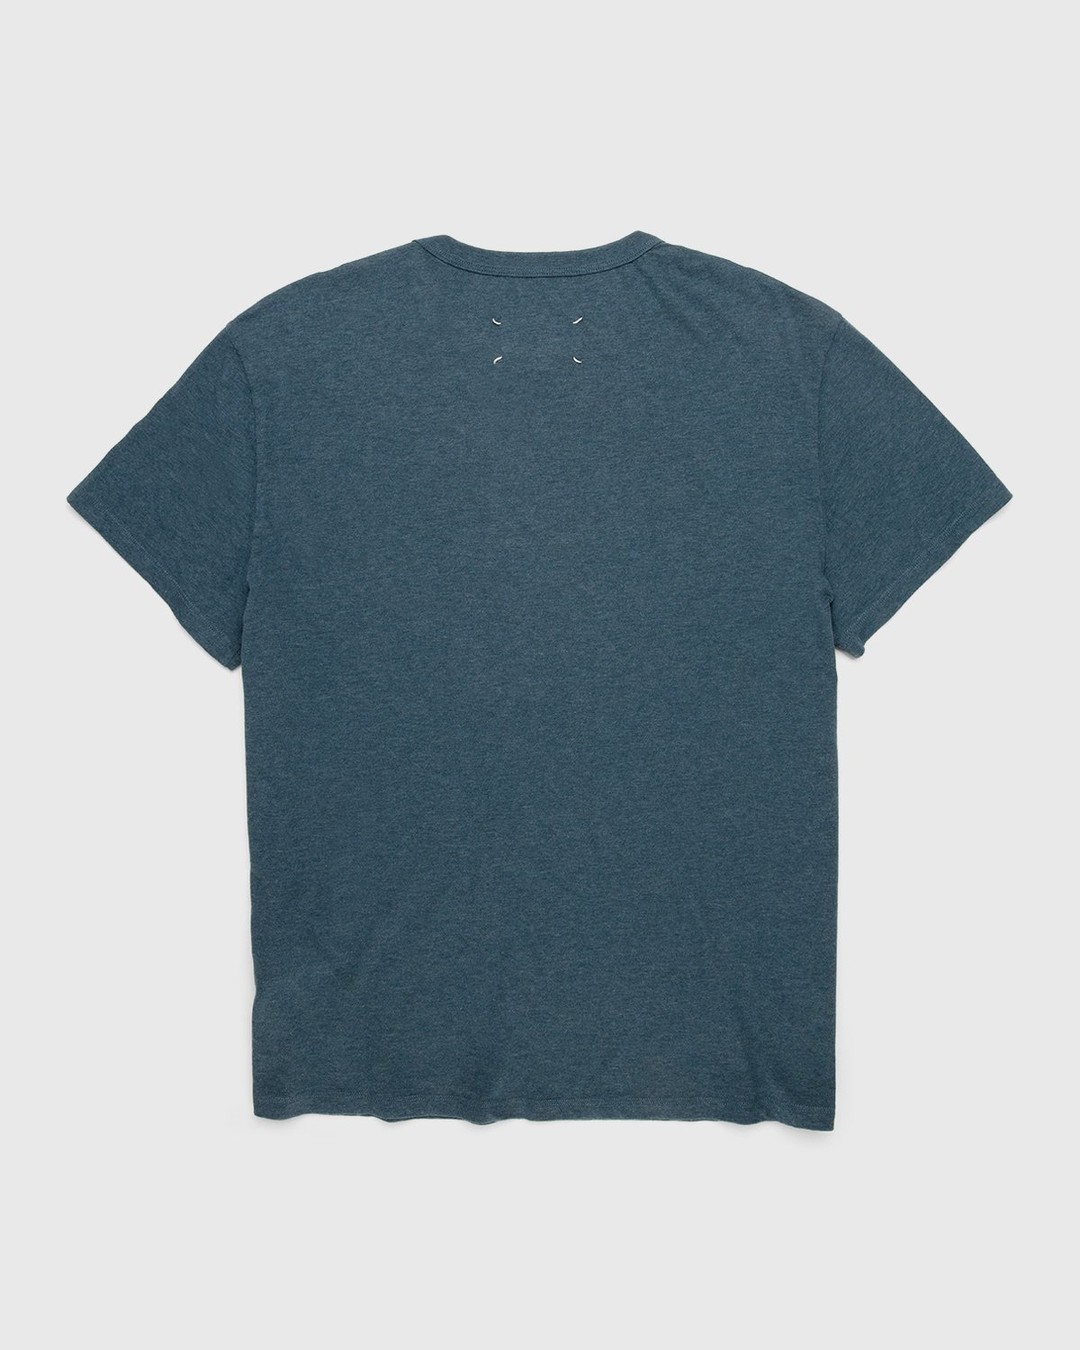 Maison Margiela – Logo T-Shirt Blue - T-Shirts - Blue - Image 2